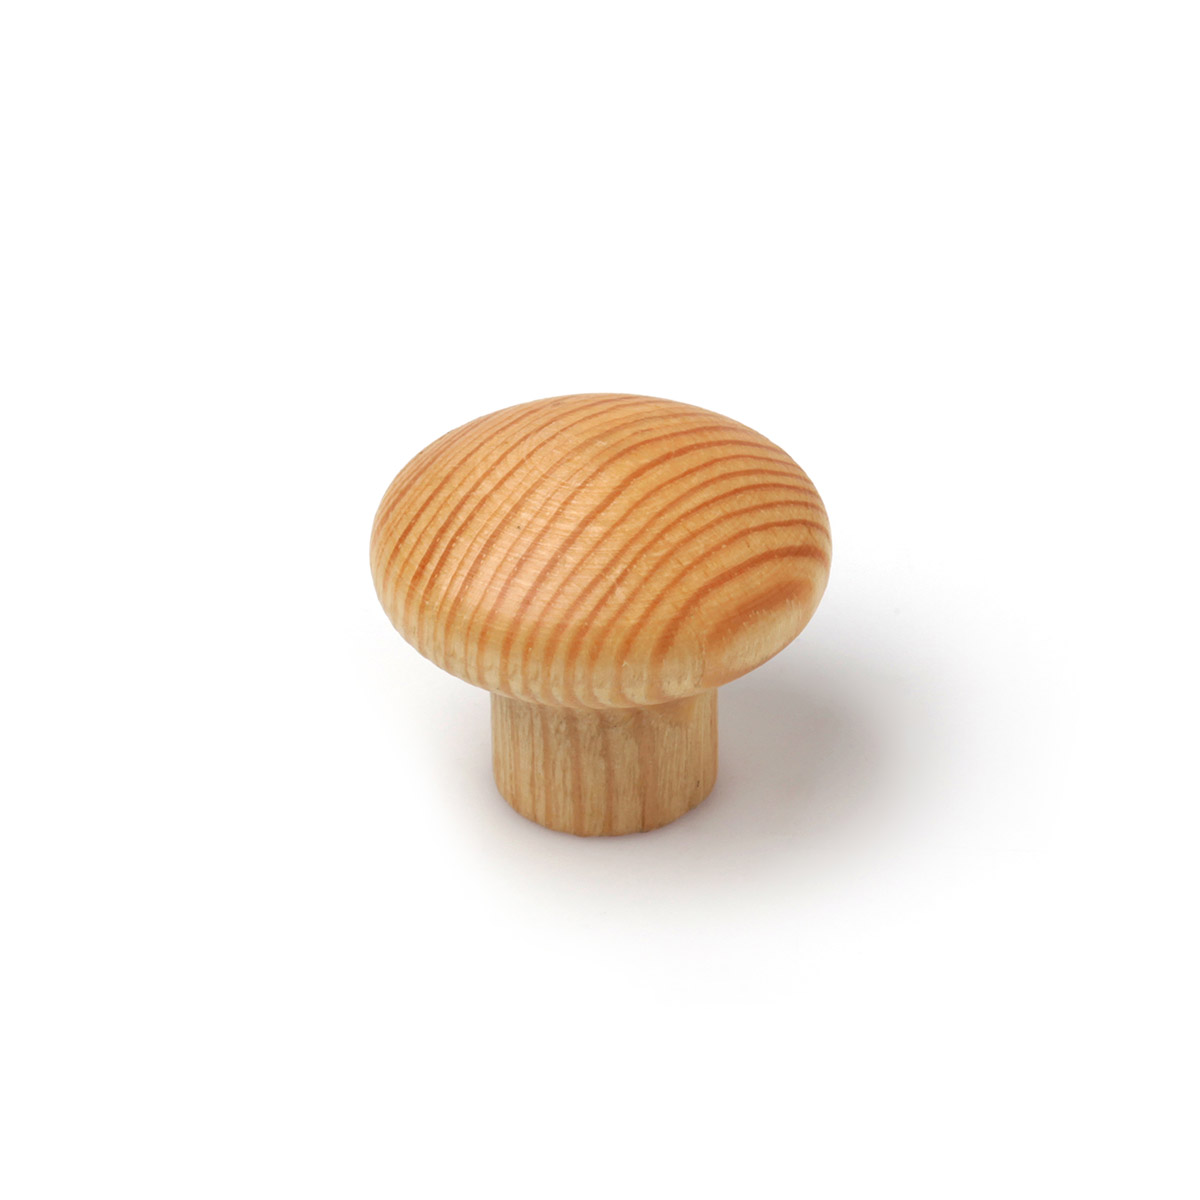 Pomo en madera con acabado pino transparante., dimensiones: 35x35x30mm, Ø: 35mm